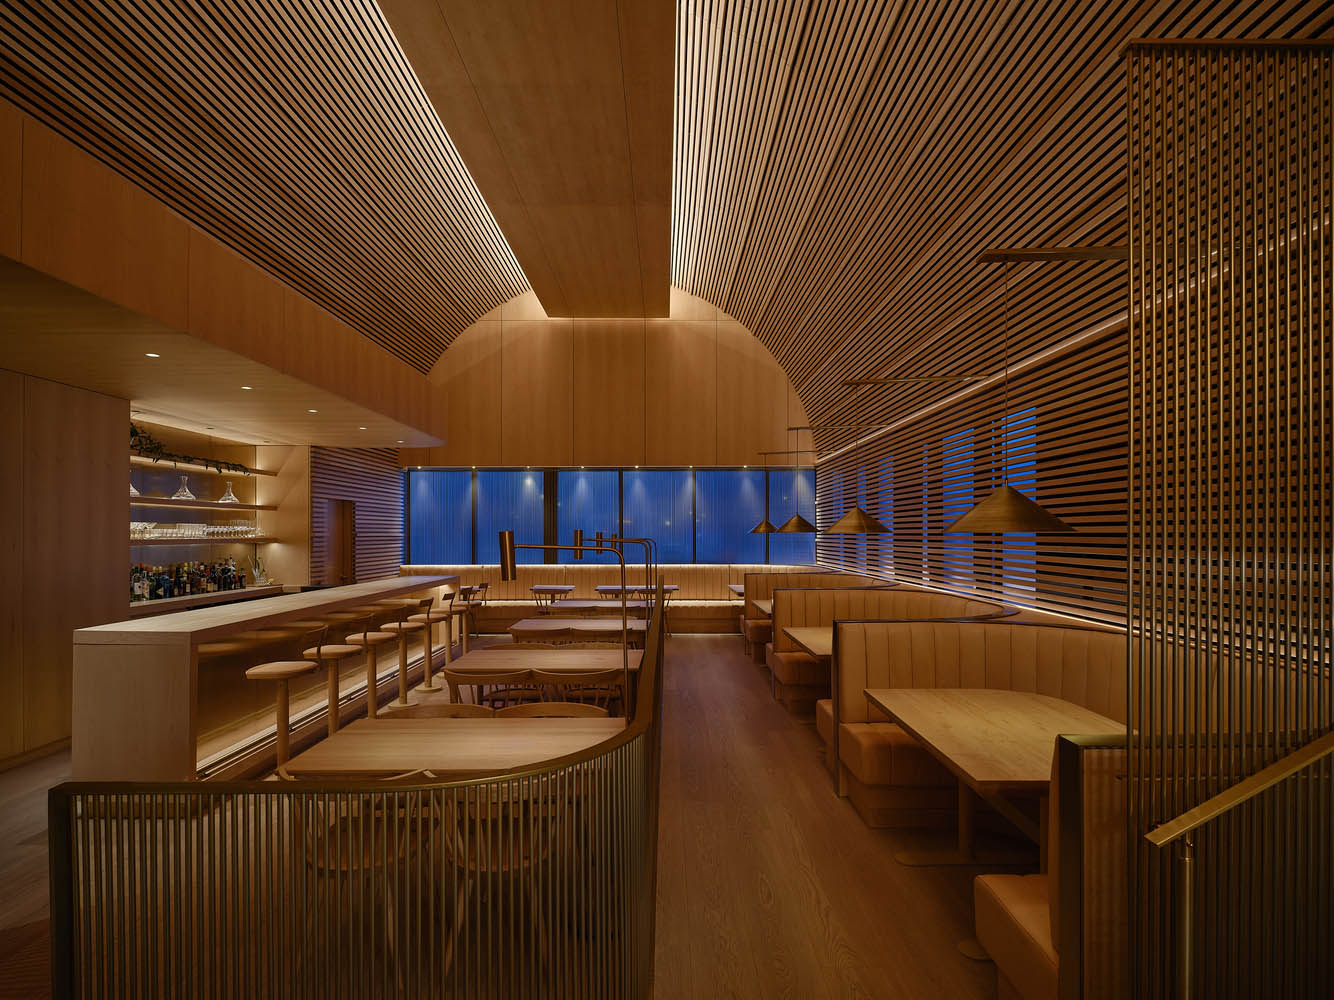 Omar Gandhi Architect,餐厅设计案例,家具展厅设计,海鲜酒吧&餐厅,加拿大,餐厅设计,酒吧设计,海鲜餐厅设计,酒吧设计案例,日式风格餐厅设计